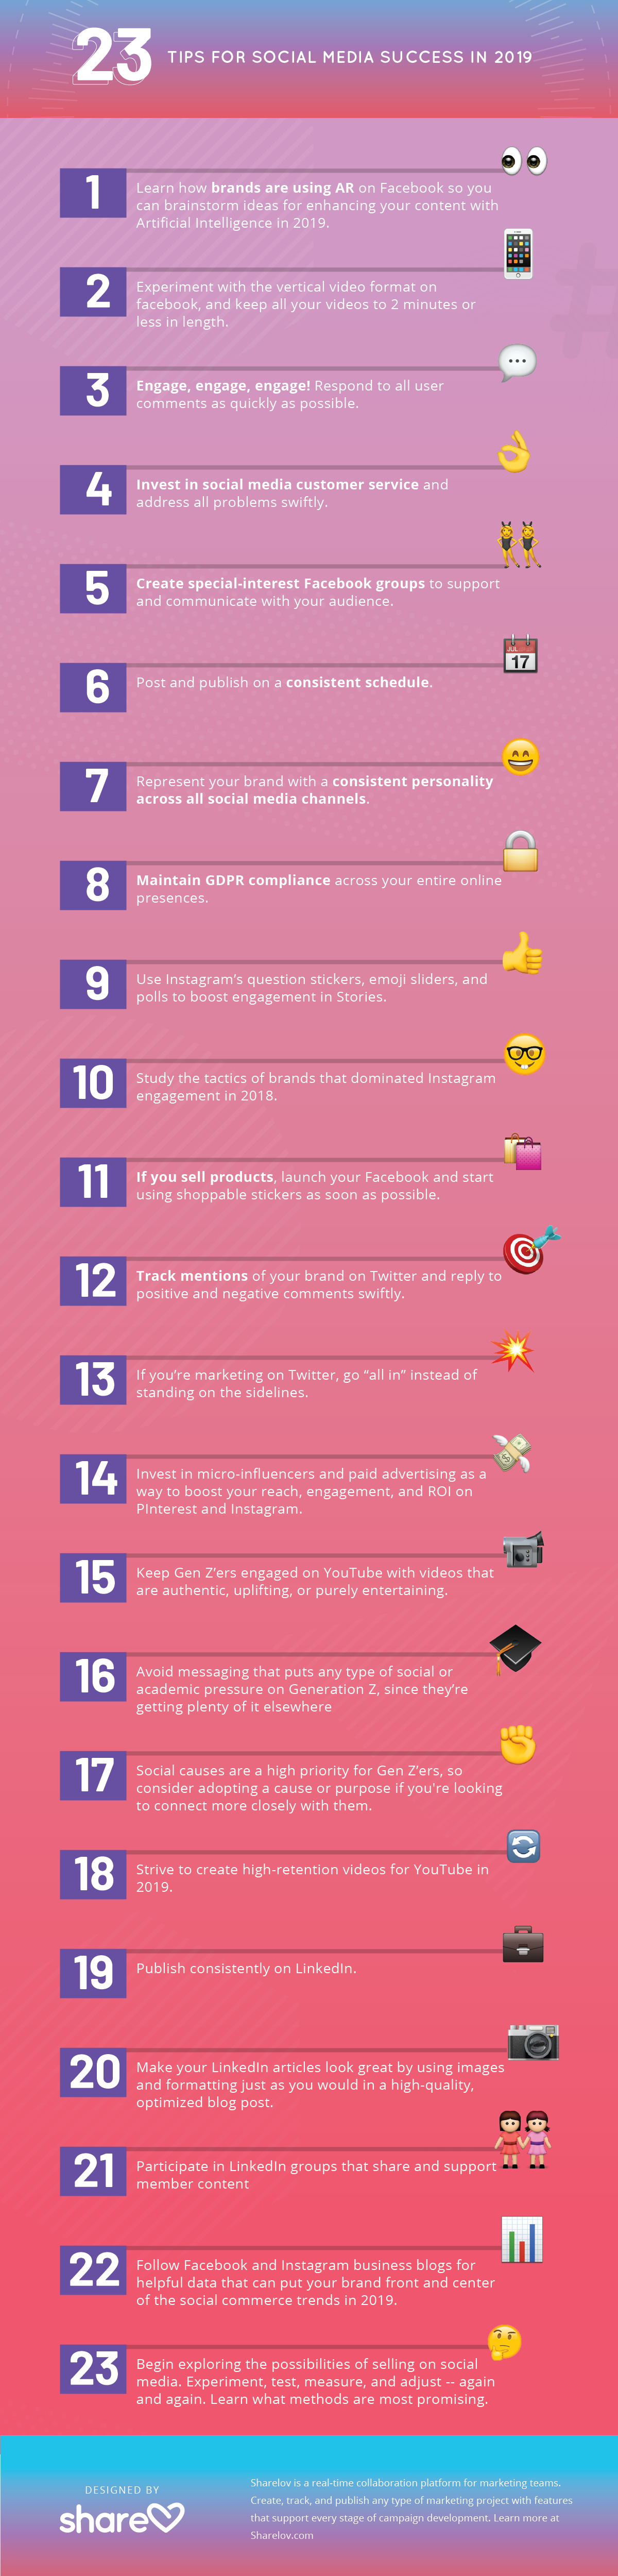 23 Tips for Social Media Success in 2019